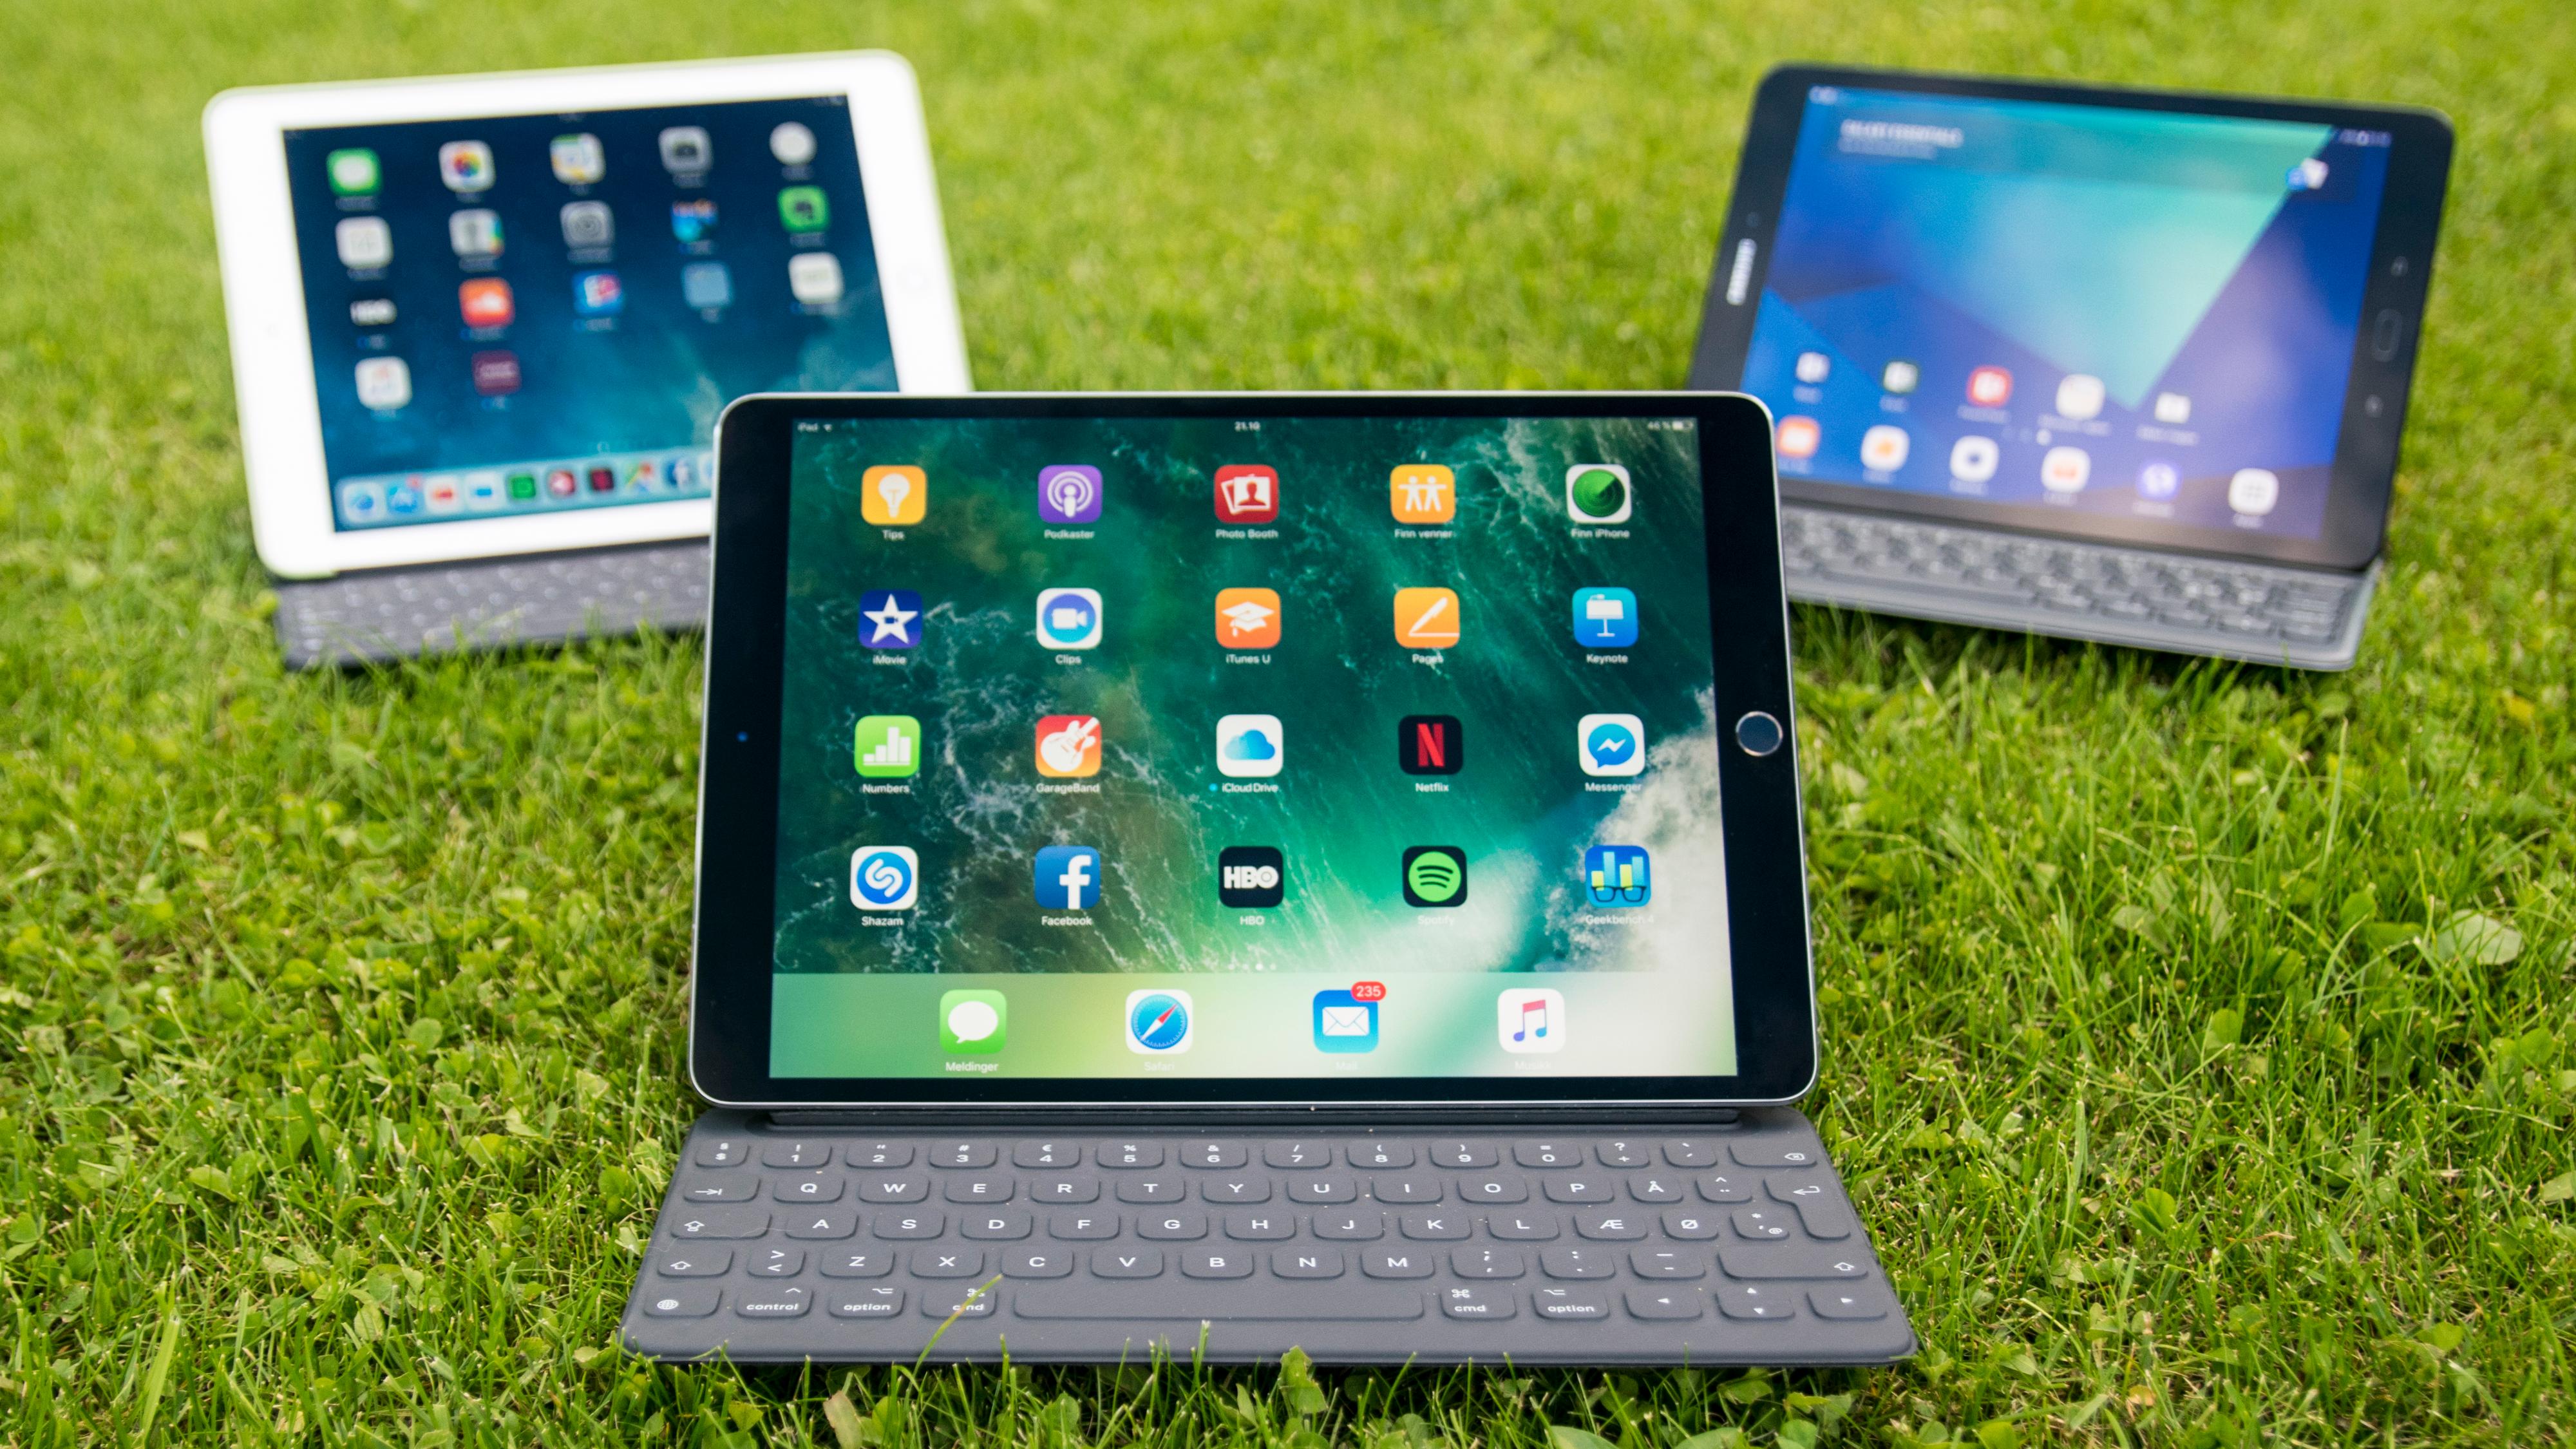 Dagens iPad Pro-modell ser slik ut, med tastaturfestet plassert slik at brettet ligger i landskapsmodus. Bak forrige generasjons iPad Pro og Galaxy Tab S3 (høyre). Bilde: Finn Jarle Kvalheim, Tek.no